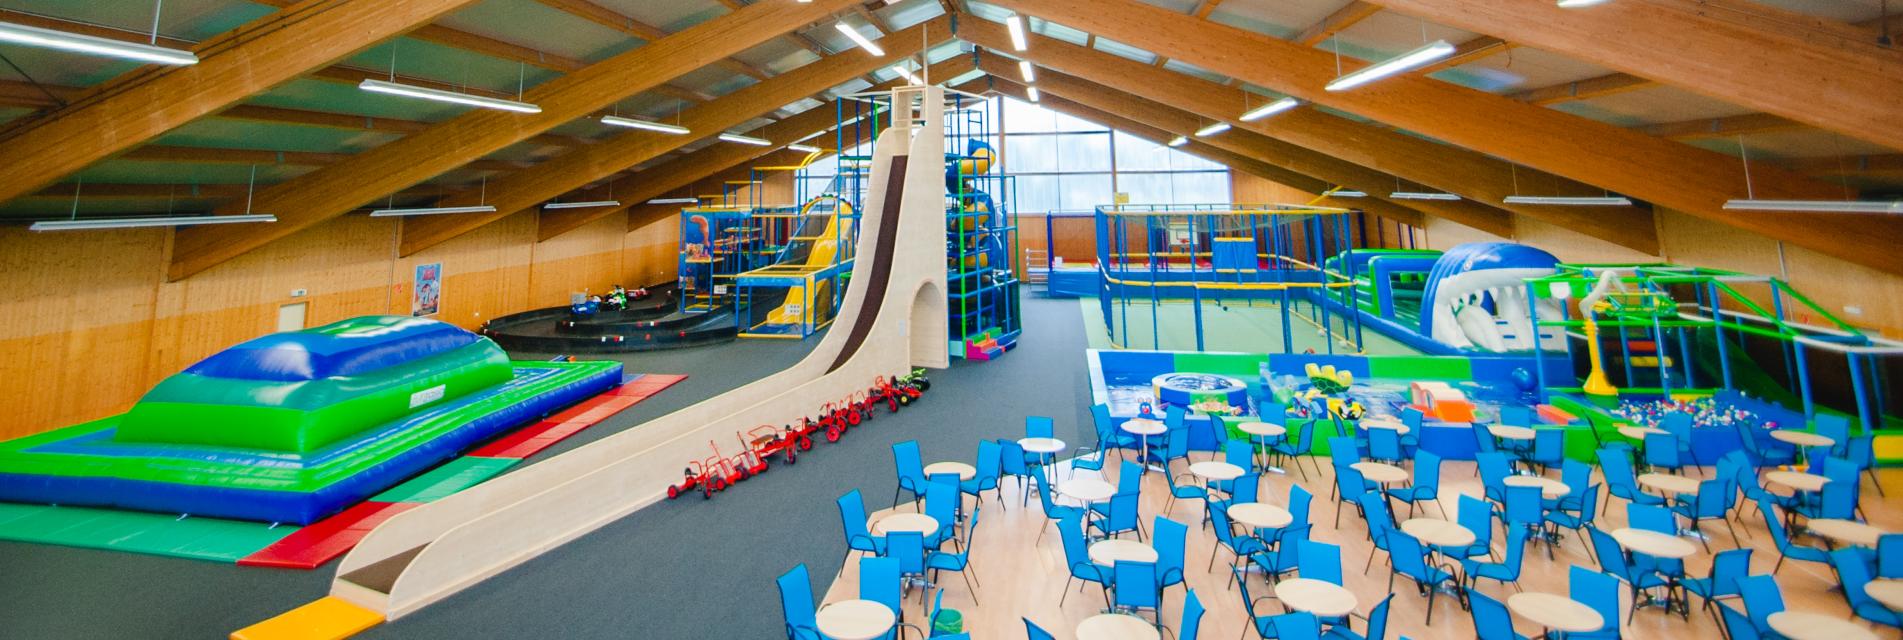 Der neue Indoorspielplatz in Dinkelsbühl bietet mitüber 2000m² genügend Platz für Spiel, Spaß und Action.